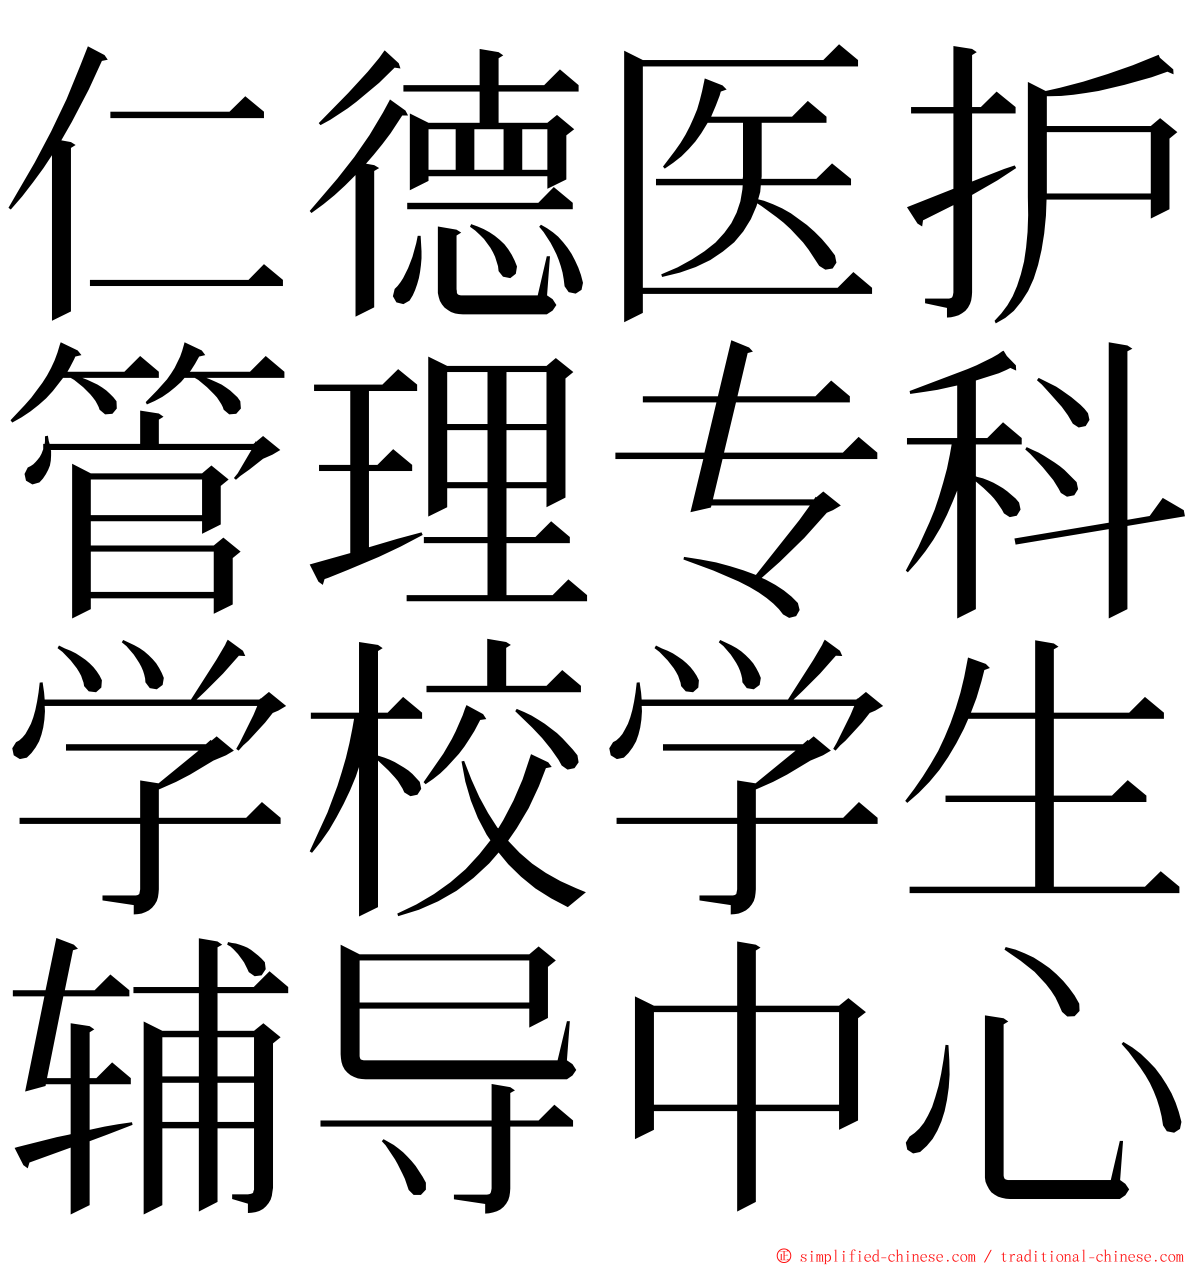 仁德医护管理专科学校学生辅导中心 ming font